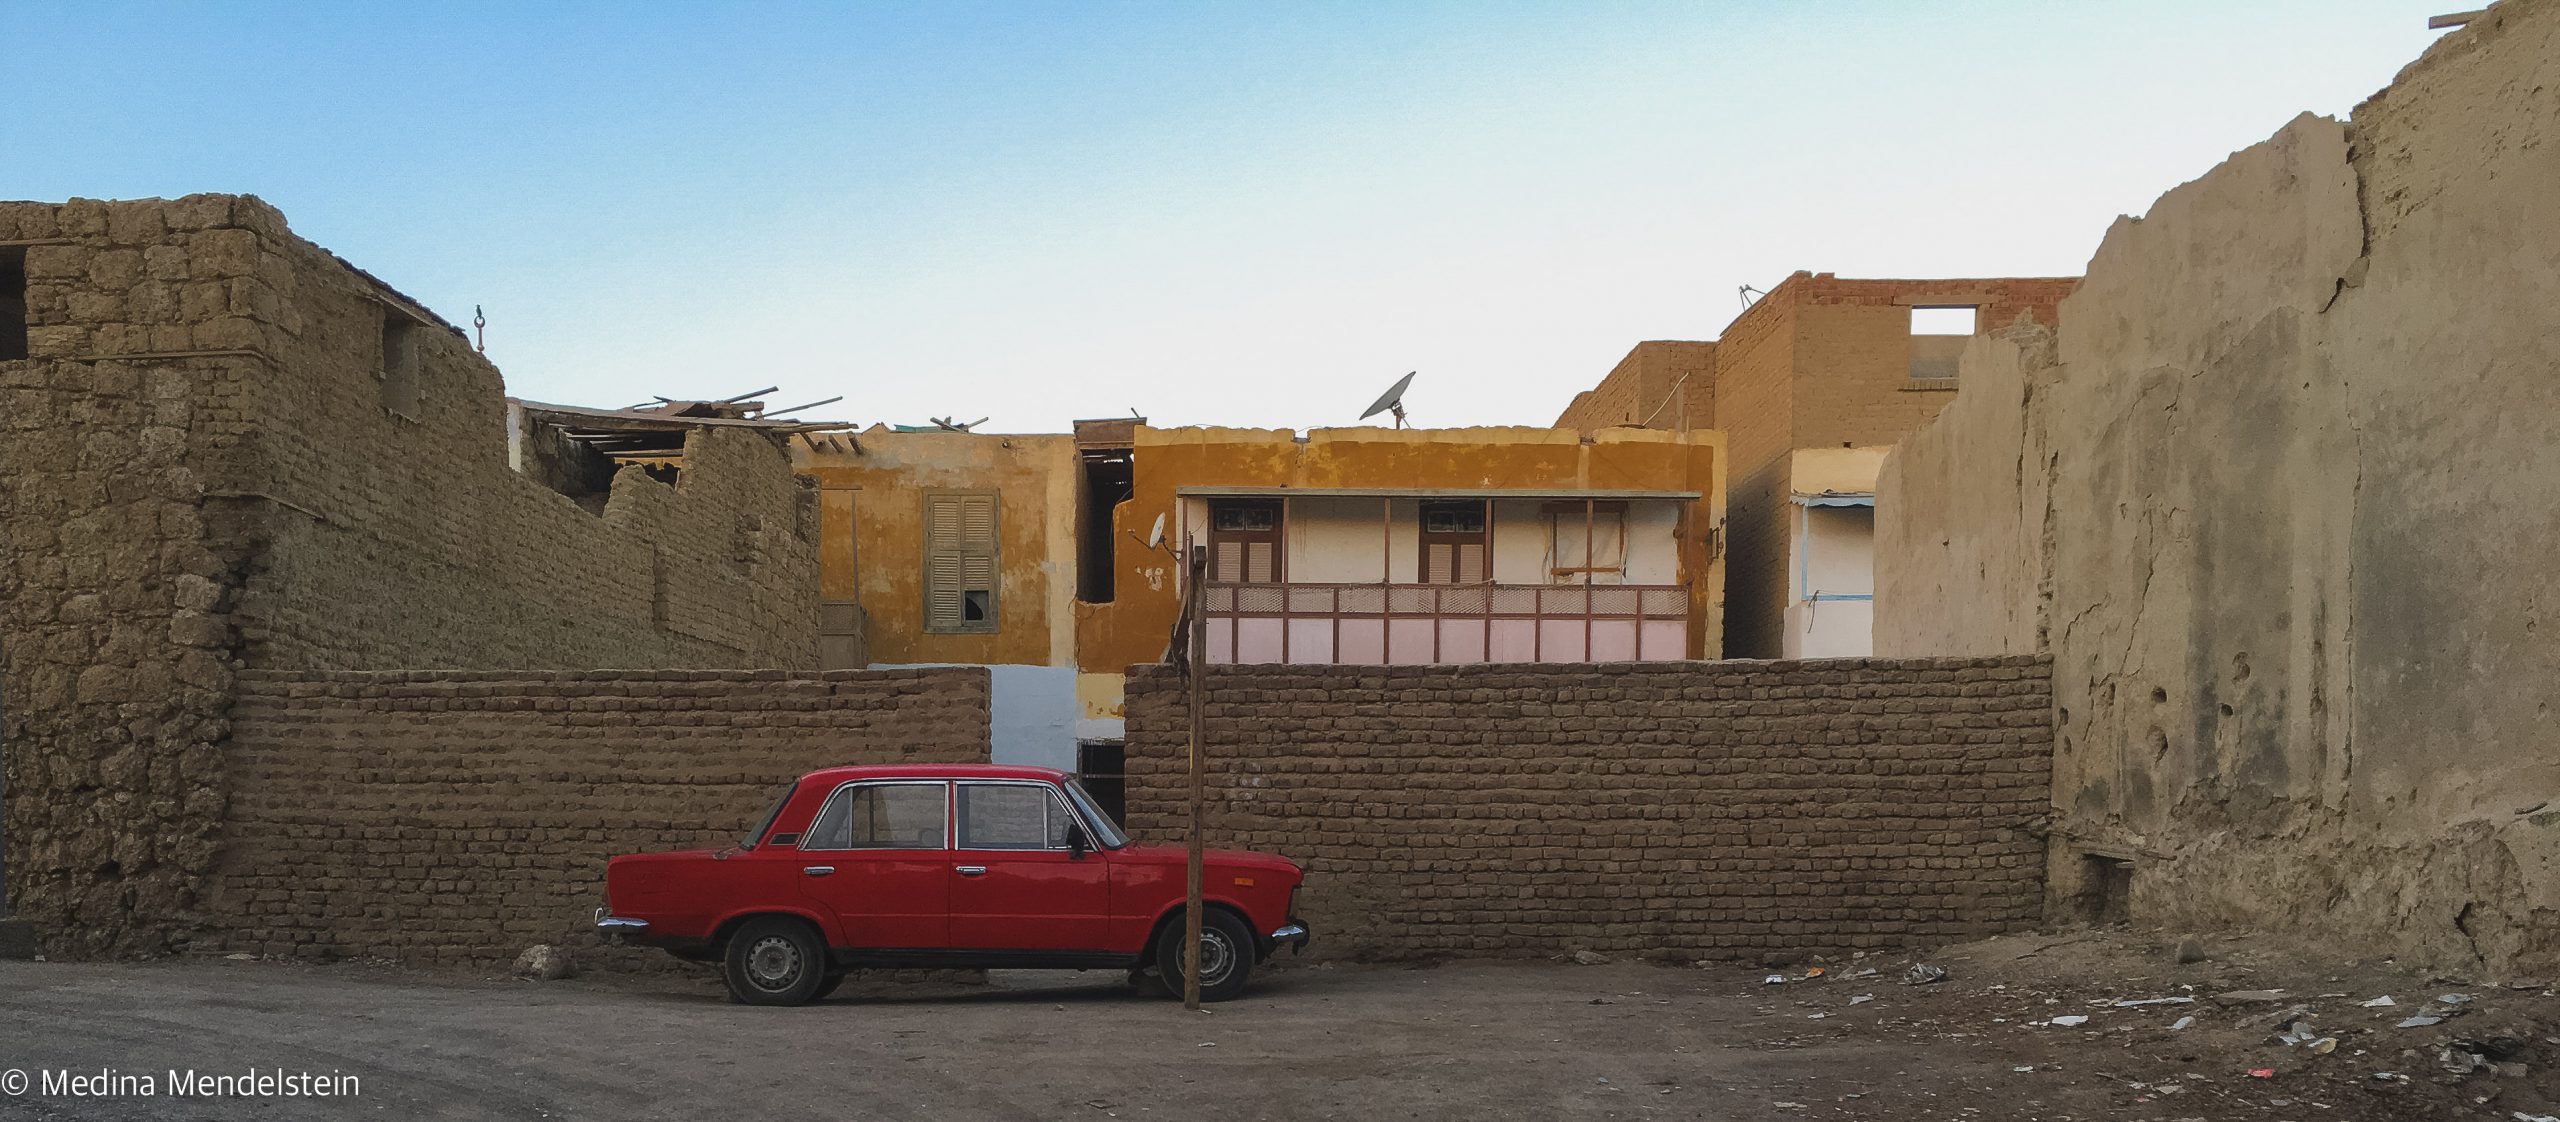 Fotografie aus: al-Quasai in Ägypten, Afrika: Dorf mit Lehmziegelhäusern. Vor den Häusern ist eine Lehmziegelmauer, davor steht ein rotes Auto.